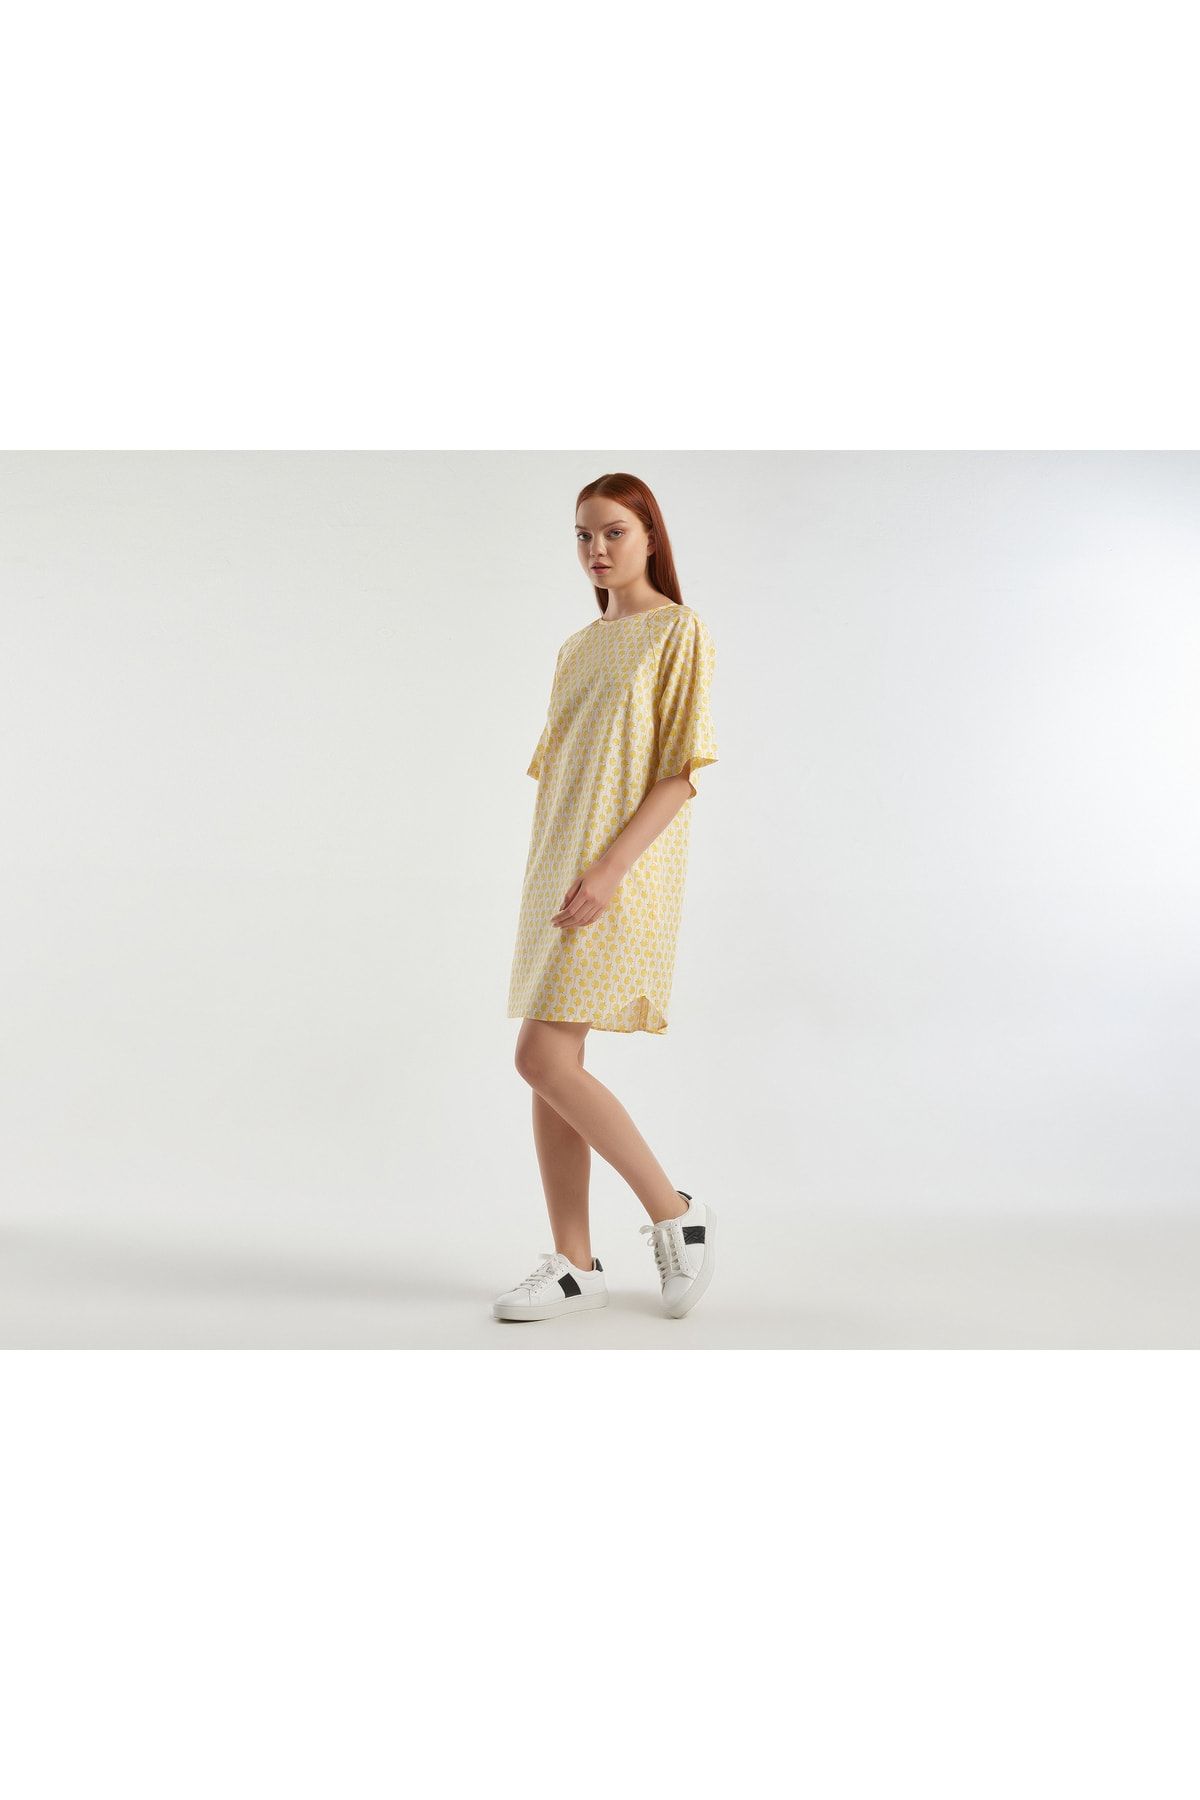 United Colors of Benetton Kadın Sarı-Beyaz Mix %100 Koton Kısa Kollu Cepli Desenli Elbise Sarı-Beyaz Mix